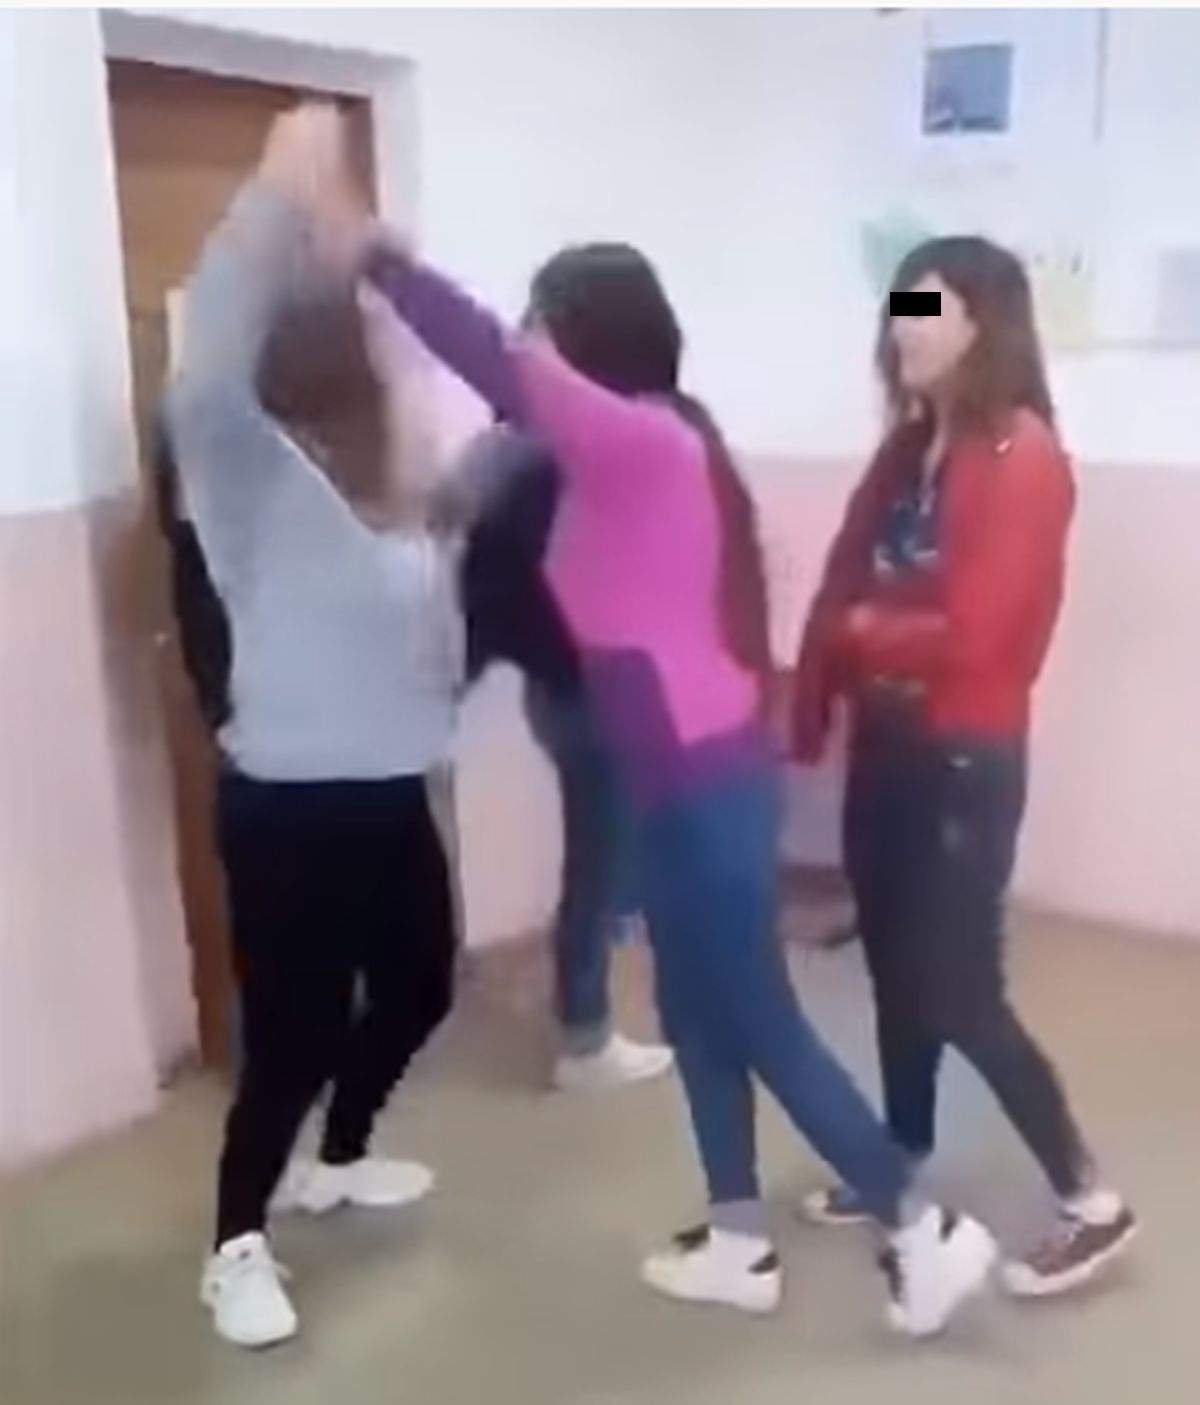 VIDEO / Scene șocante într-un liceu din România. Elevă bătută crunt în sala de clasă, sub privirile colegilor care au și filmat momentul